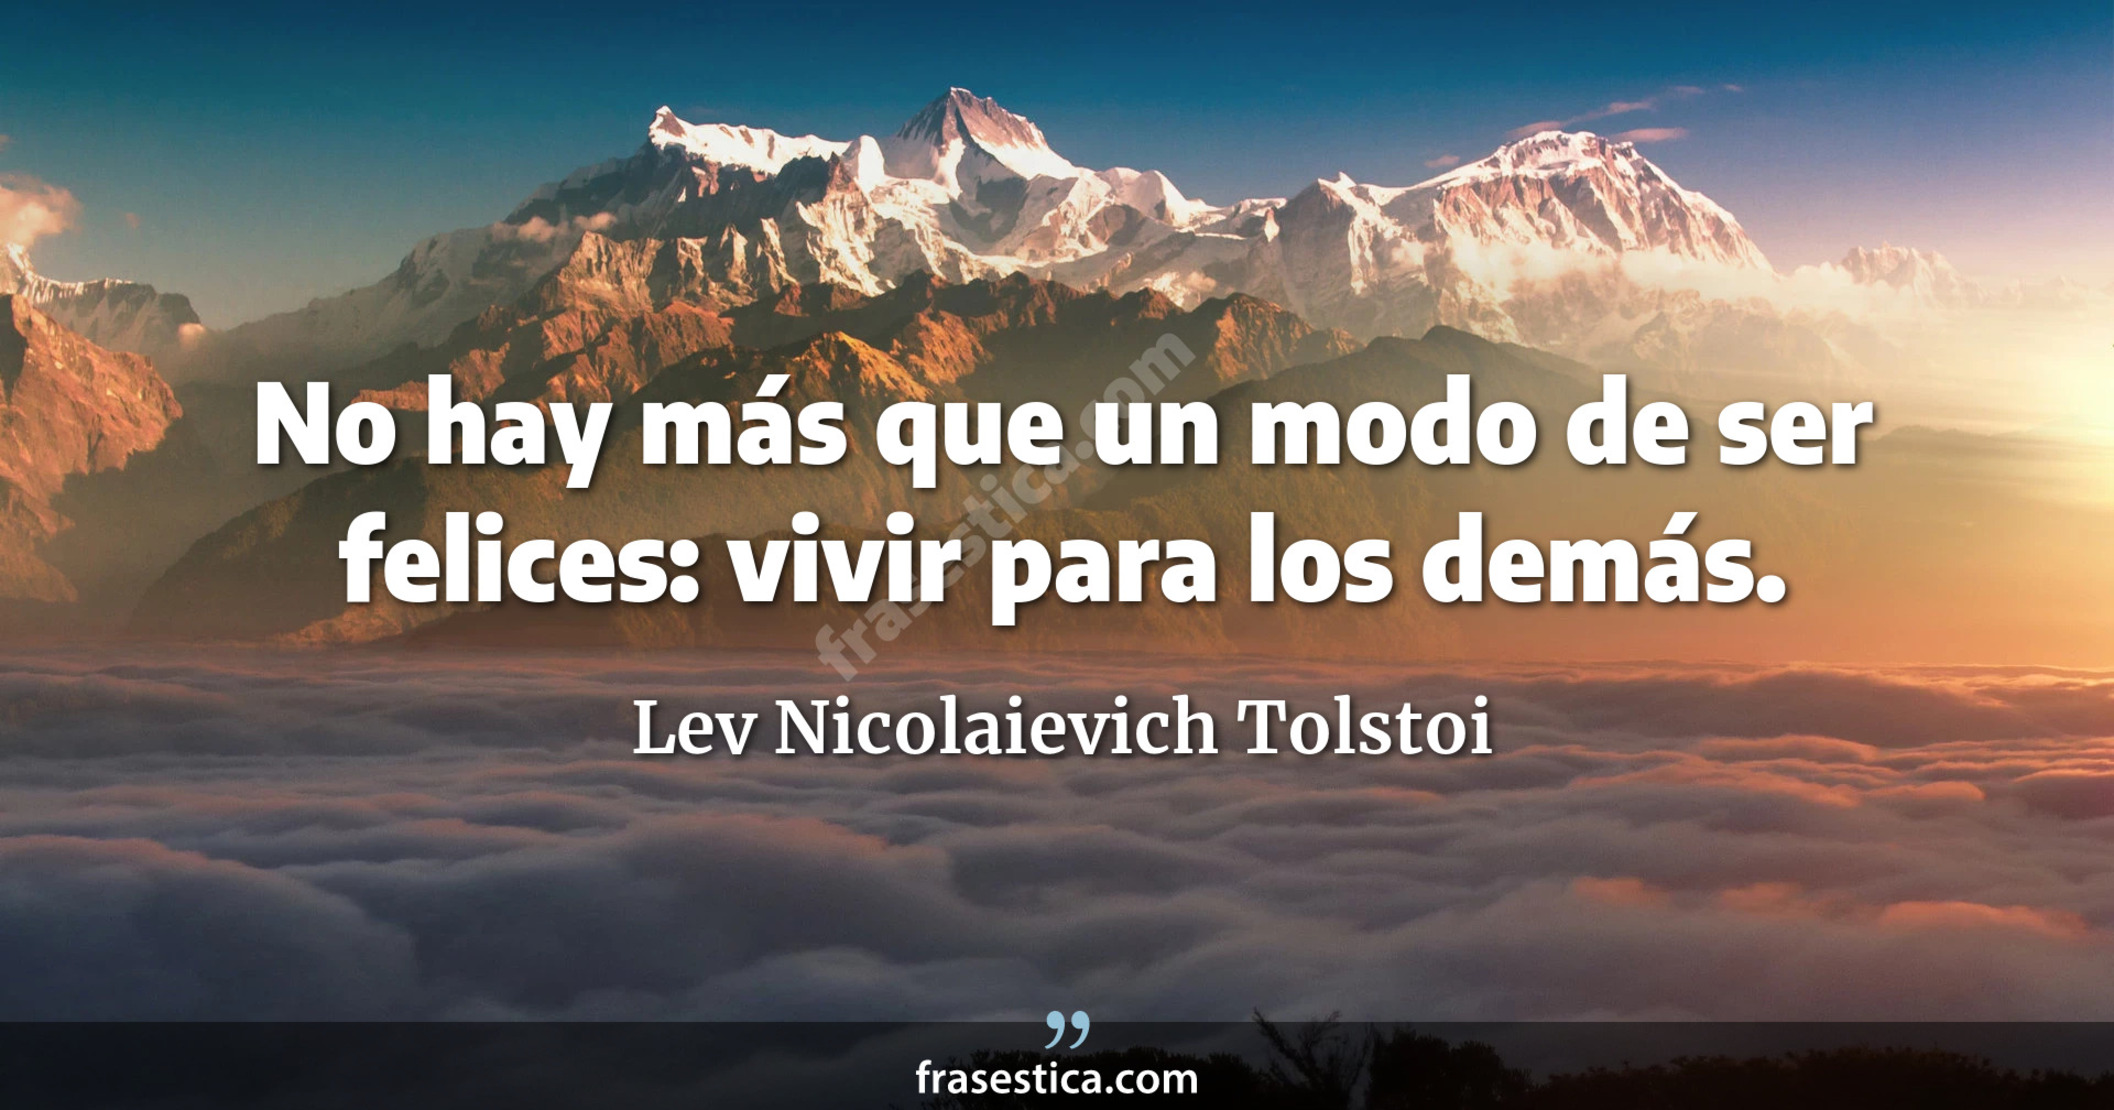 No hay más que un modo de ser felices: vivir para los demás. - Lev Nicolaievich Tolstoi